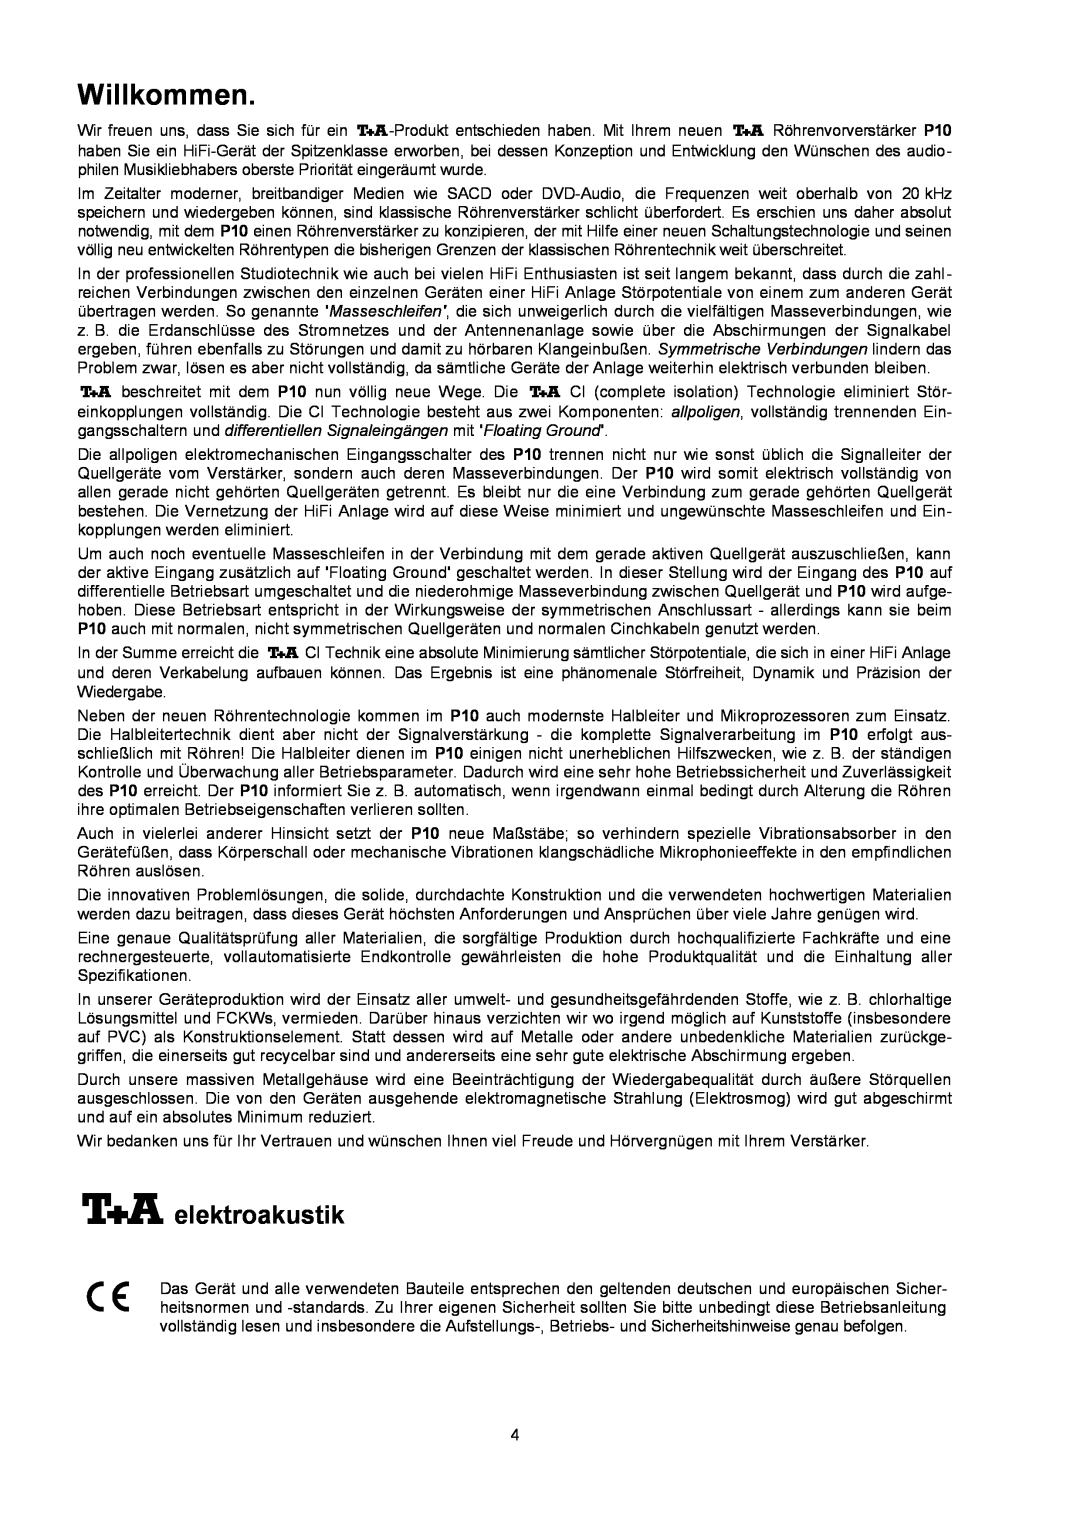 T+A Elektroakustik P 10 user manual Willkommen, elektroakustik 